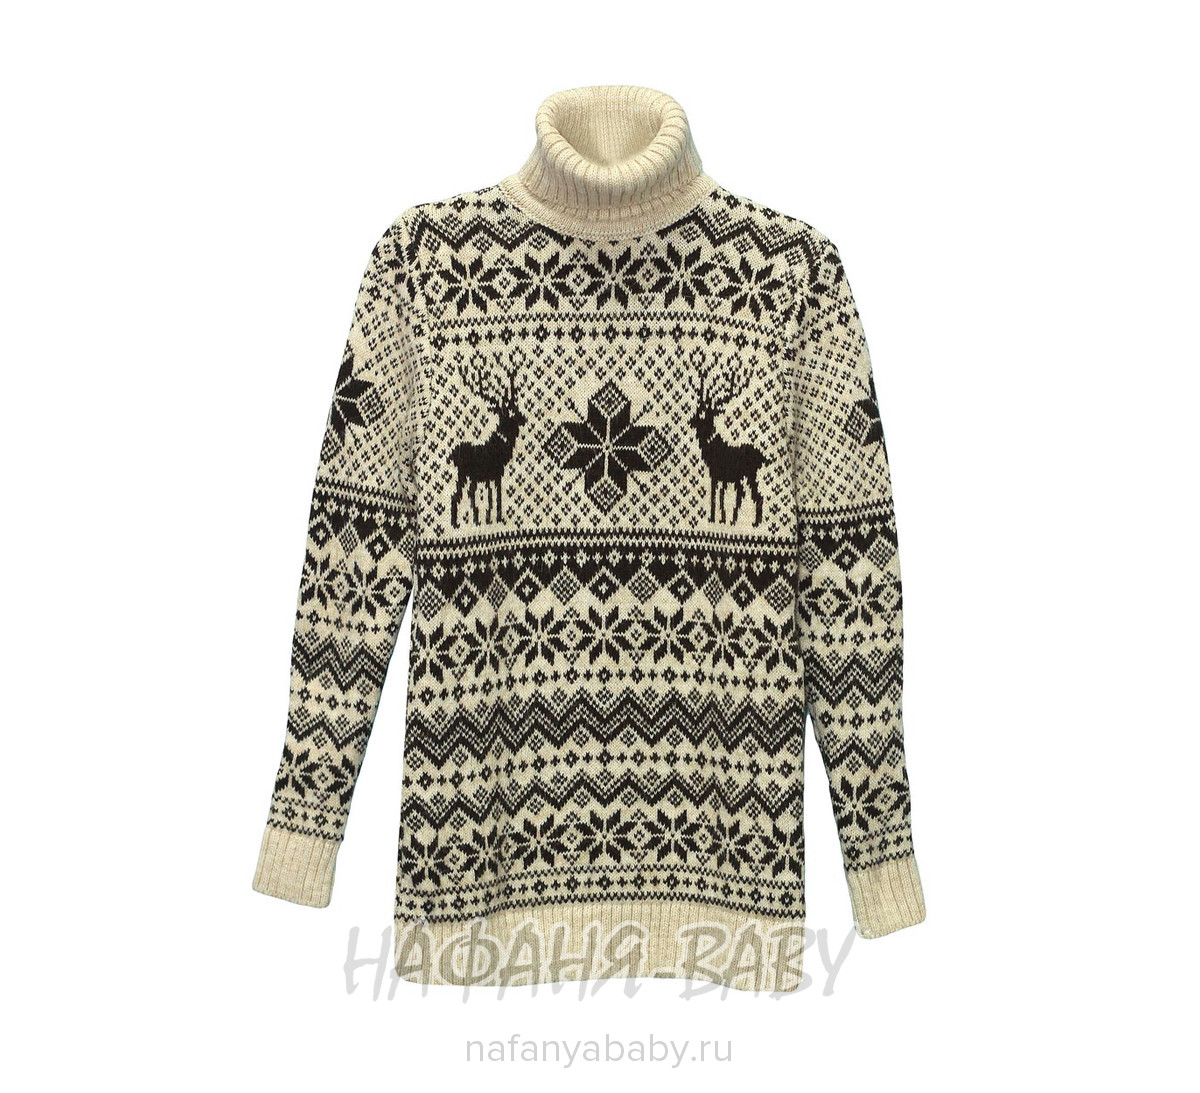 Вязанный теплый свитер CILIVILI арт: 711, 10-15 лет, 5-9 лет, оптом Турция